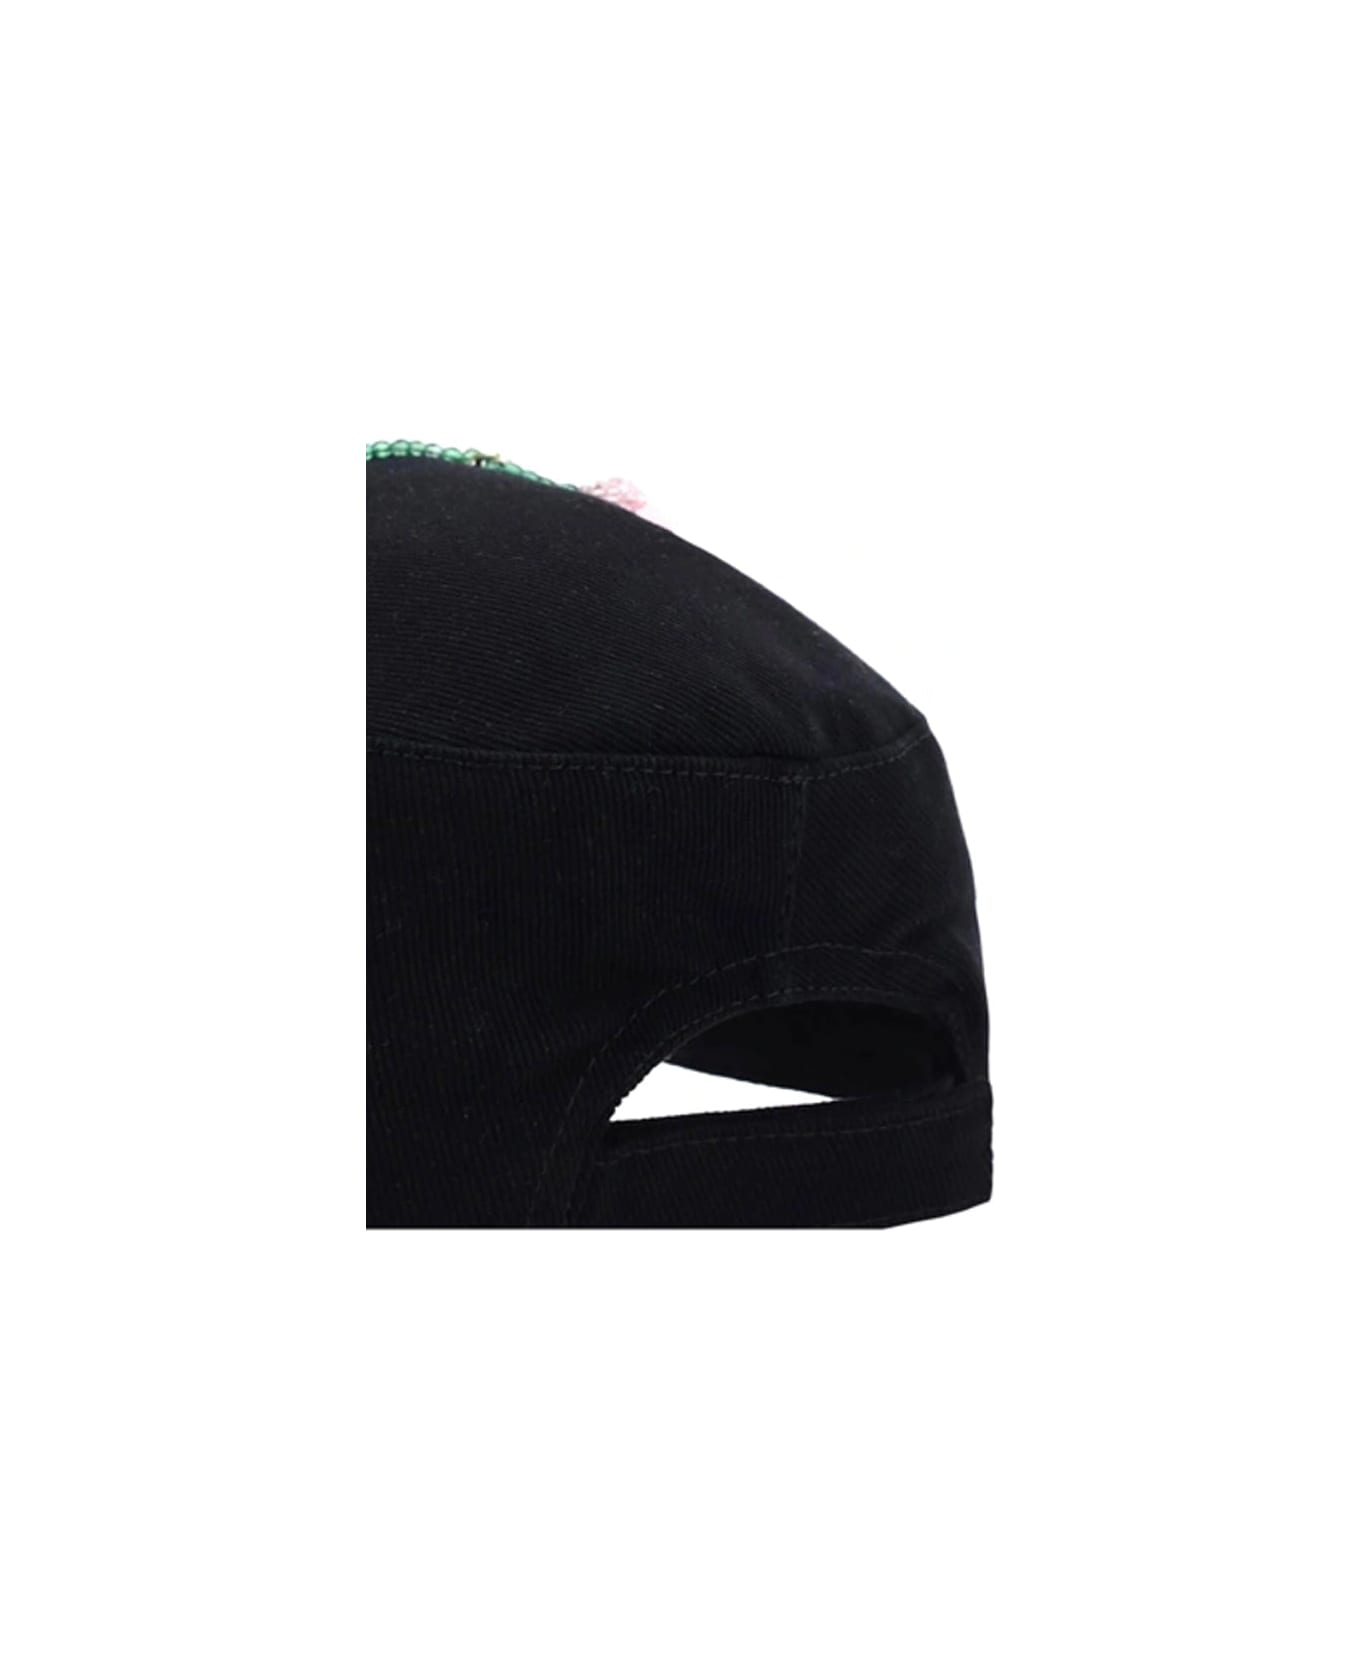 Miu Miu Cotton Cap - Black 帽子